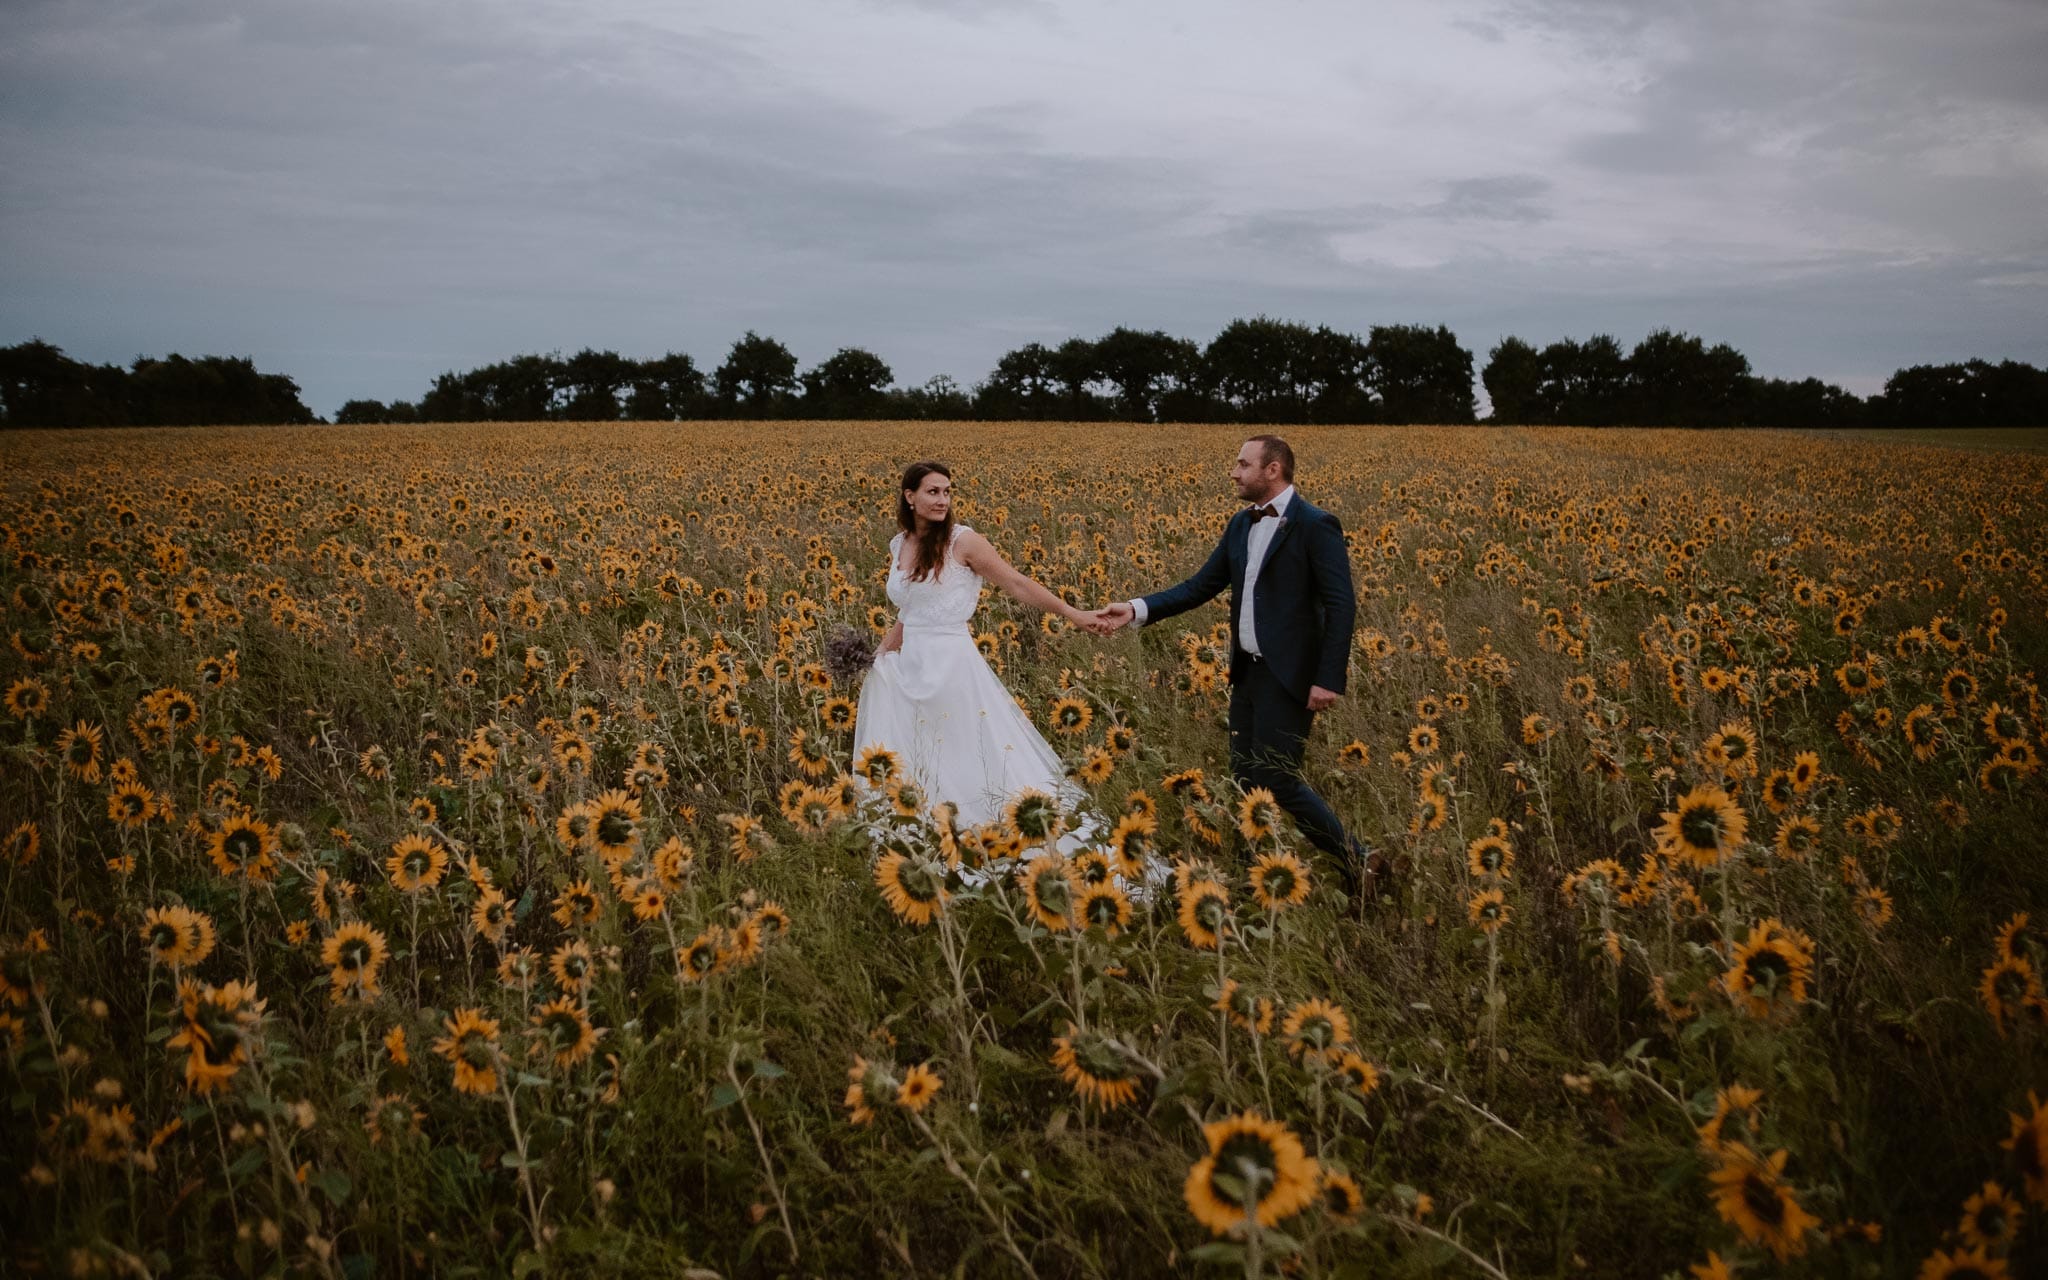 Séance couple après mariage naturelle et romantique dans un champ de tournesols en vendée par Geoffrey Arnoldy photographe